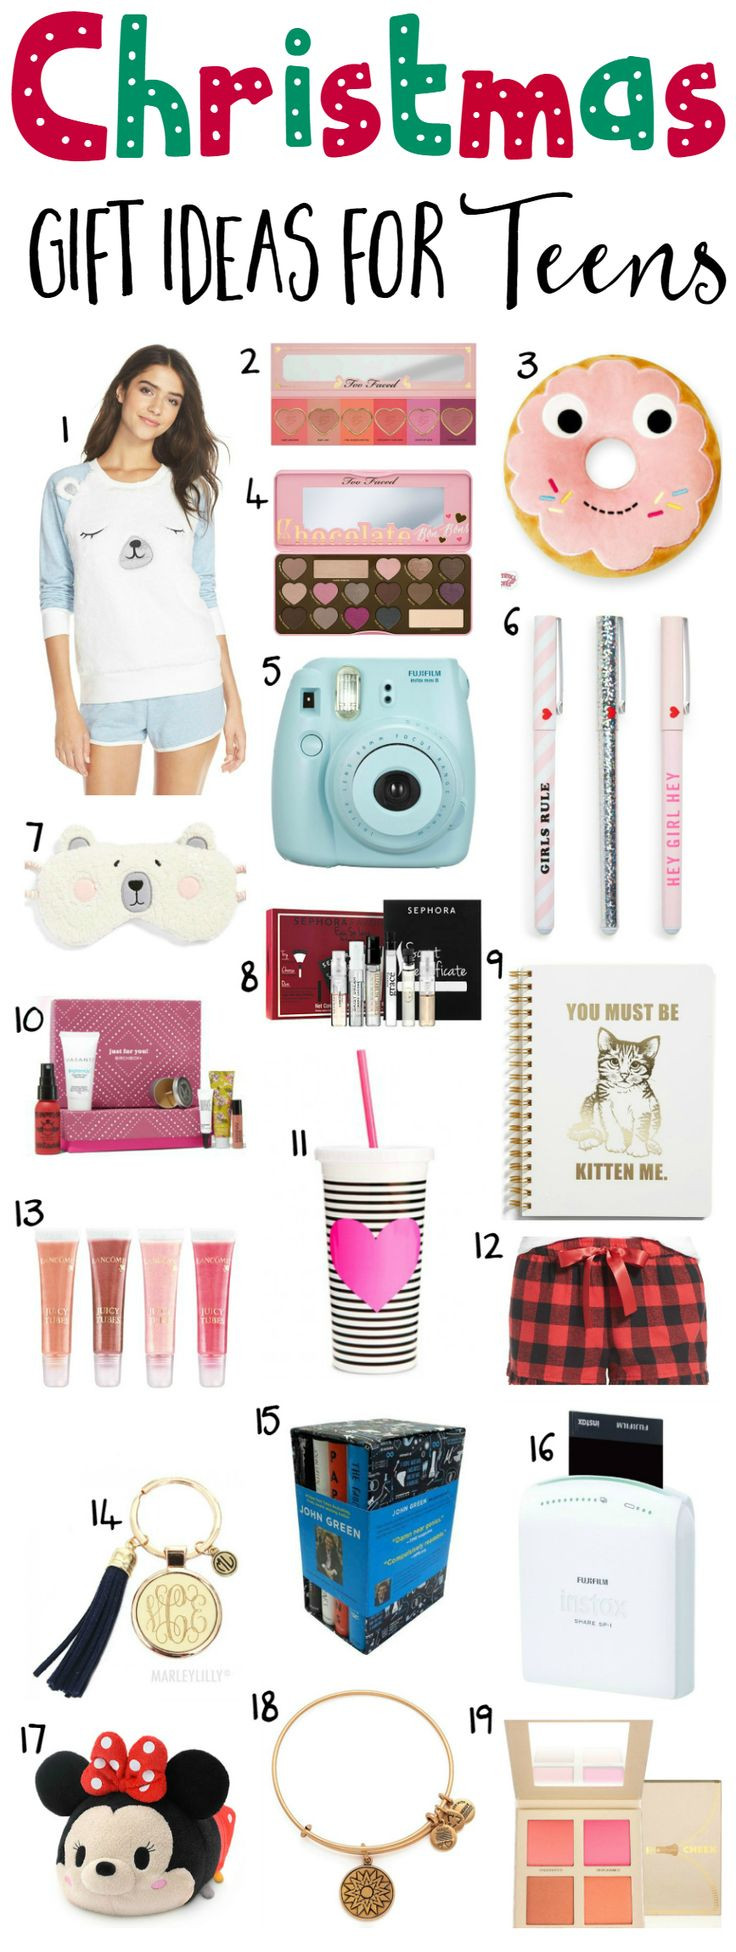 Teen Boyfriend Gift Ideas
 The 25 best Teenage boyfriend ts ideas on Pinterest